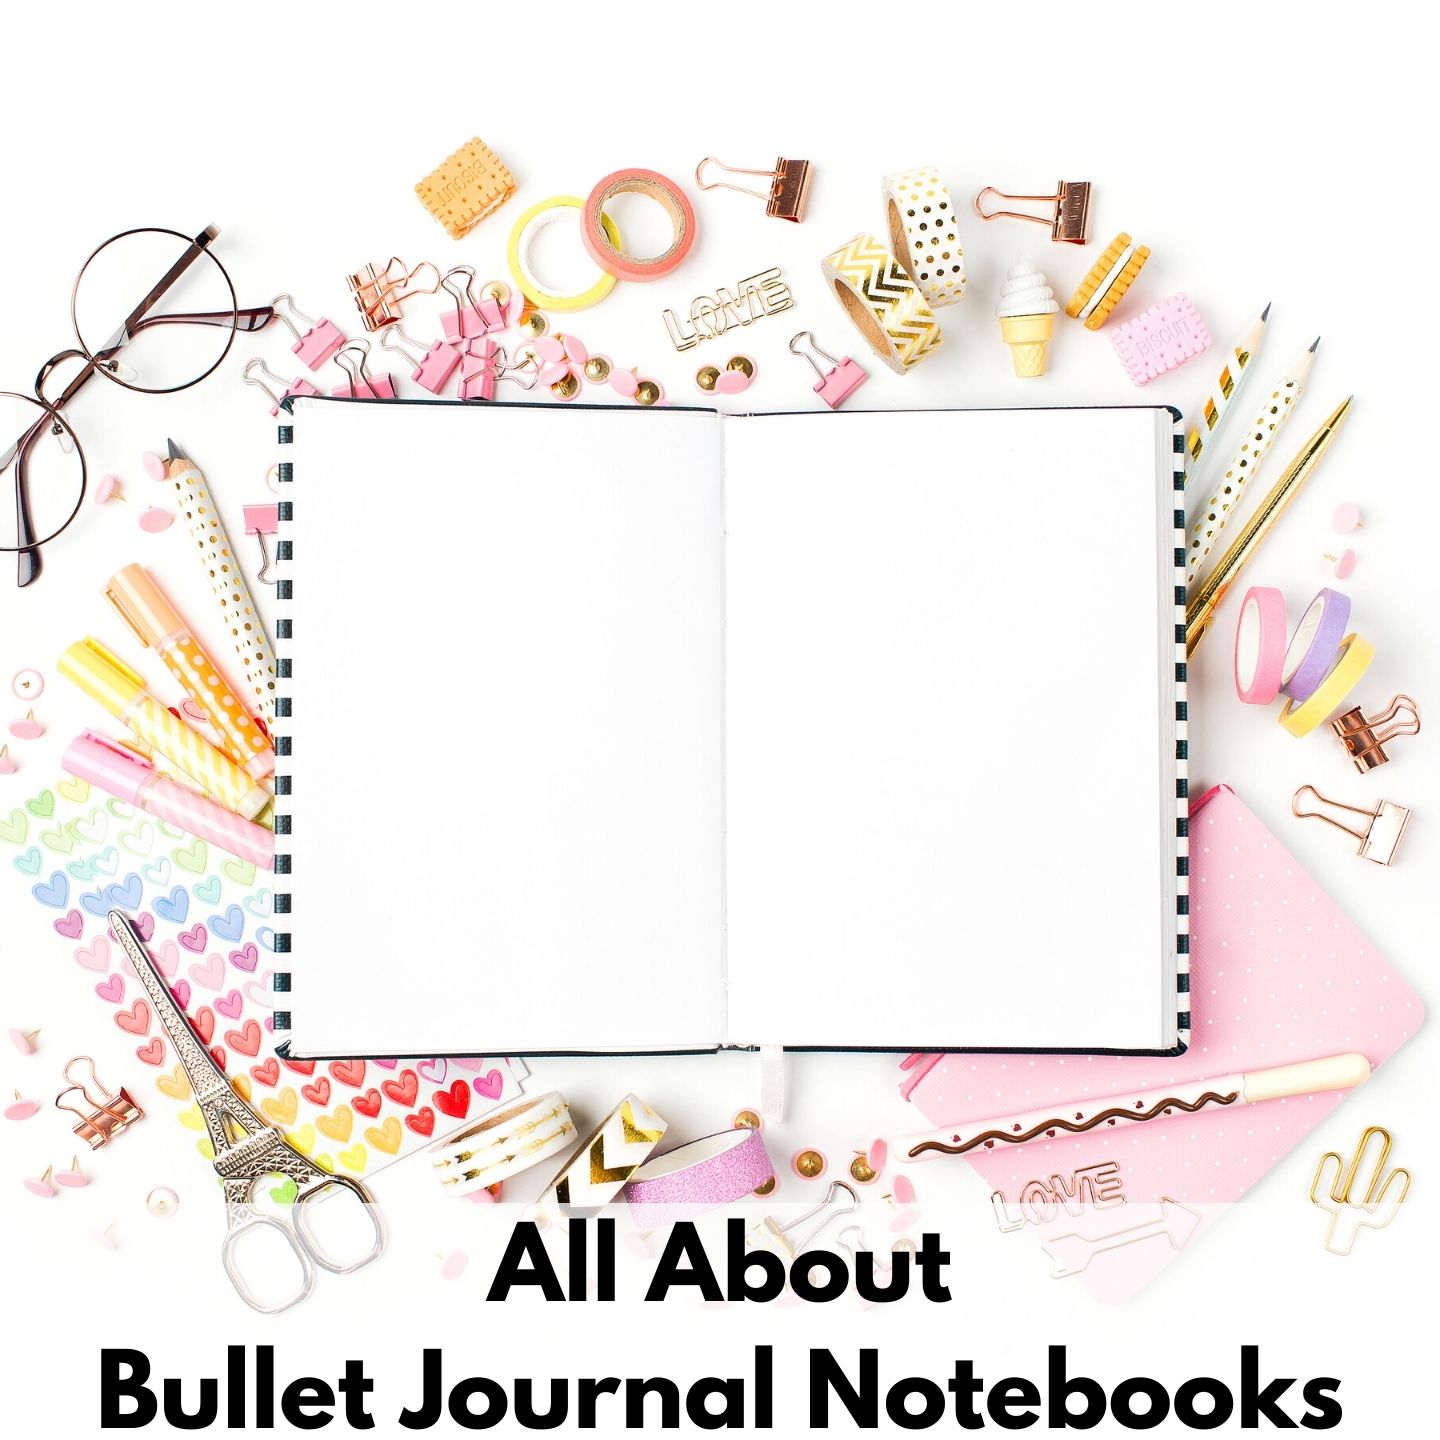 https://natashalh.com/wp-content/uploads/2020/12/bullet-journal-notebooks.jpg